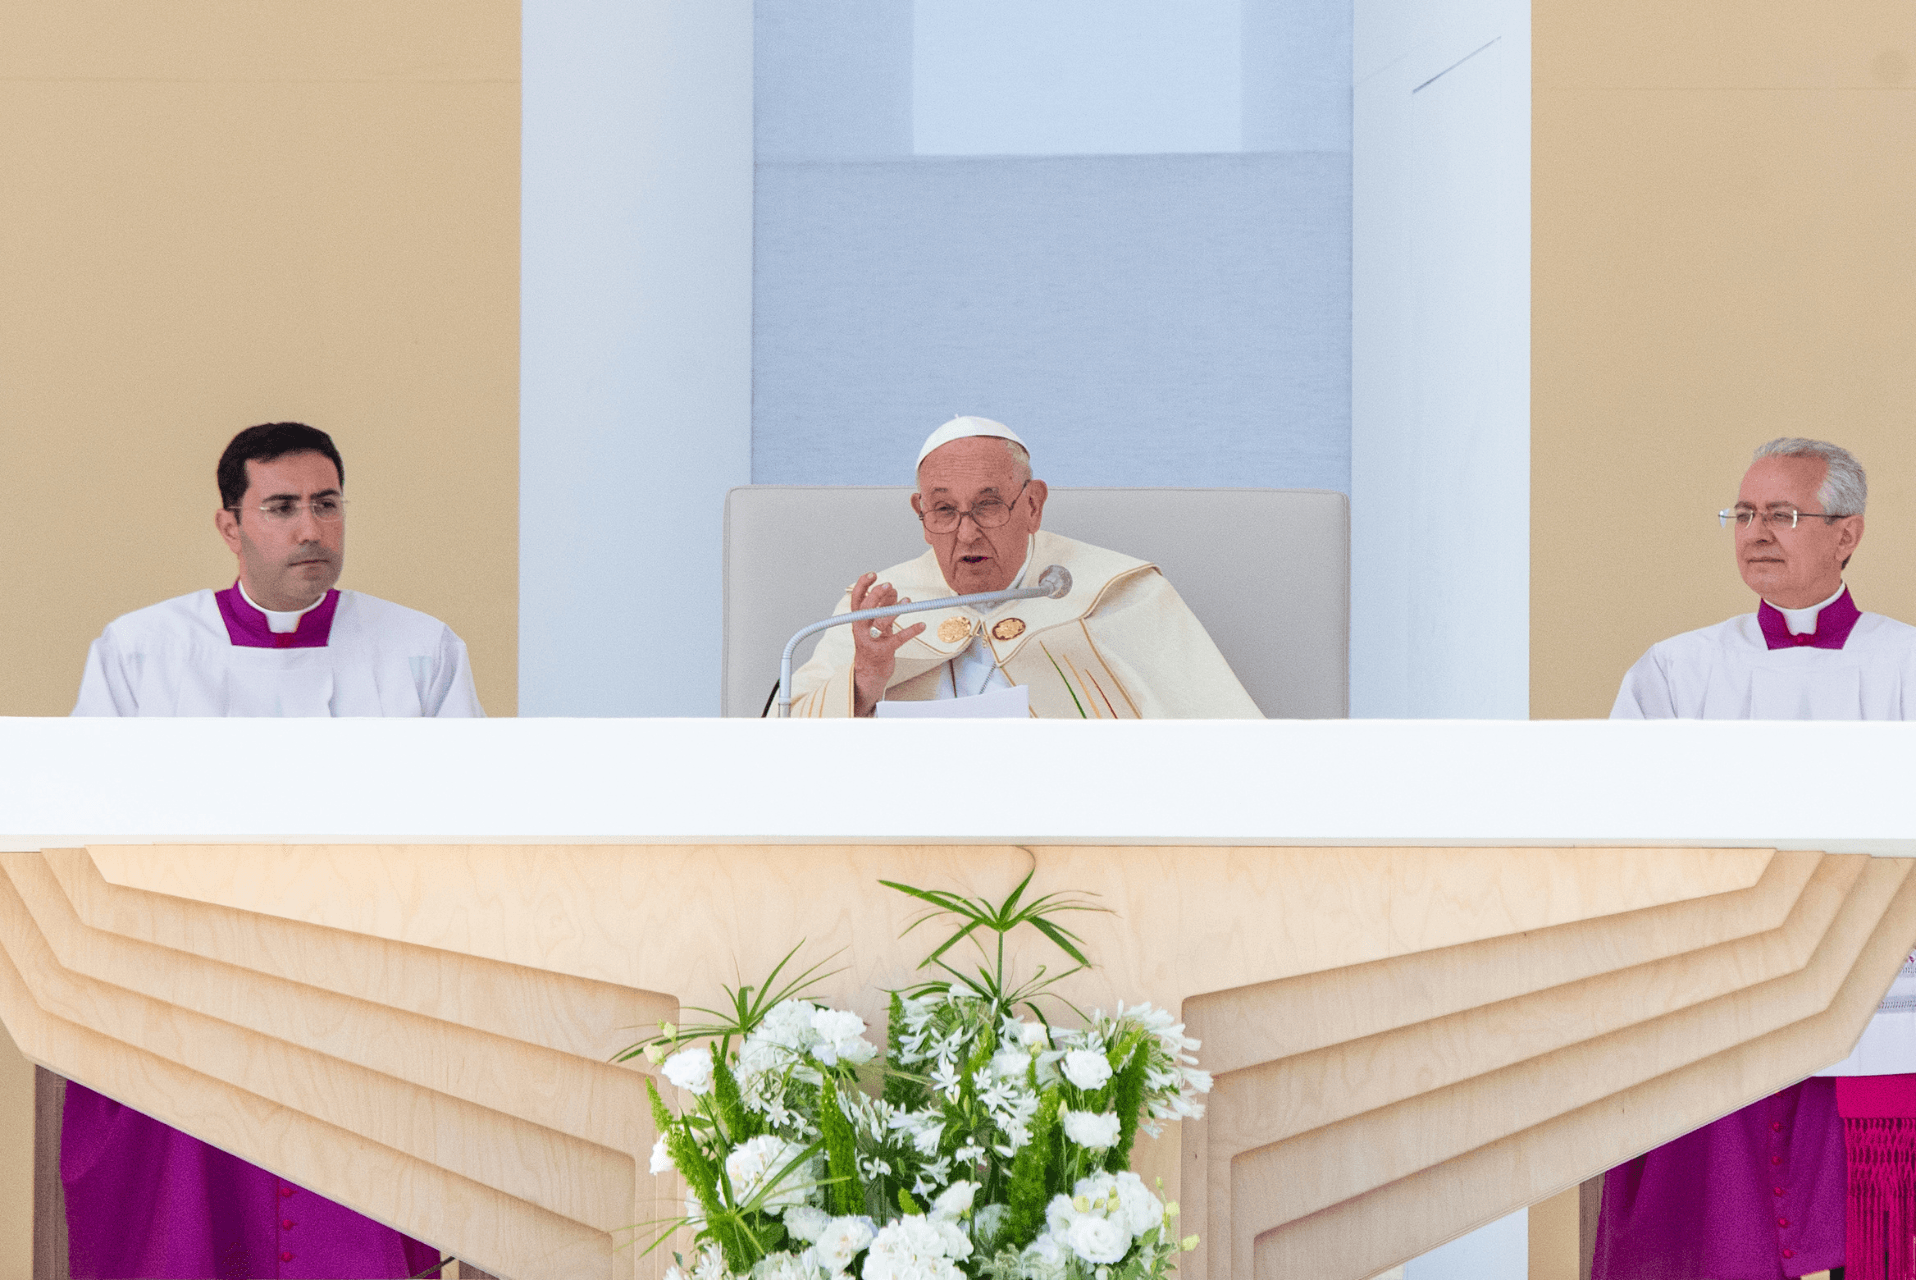 Imagen destacada del artículo: Homilía del Papa Francisco en la Misa de Envío 